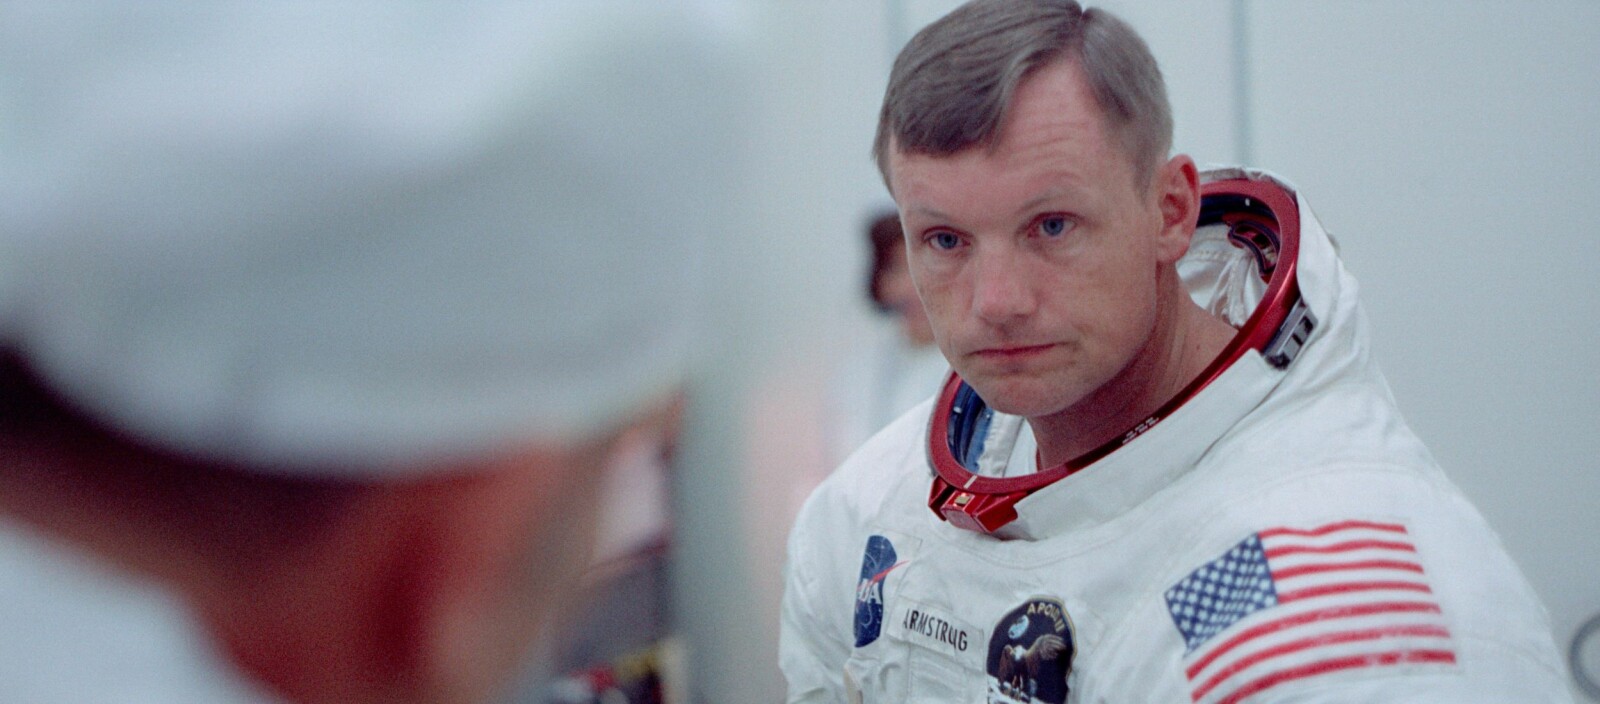 <b>ANSPENT:</b> Førstemann som gikk på månen, Neil Armstrong, rett før rakettoppskytingen. Det alvorlige blikket mer enn antyder at ferden kunne bli farefull.